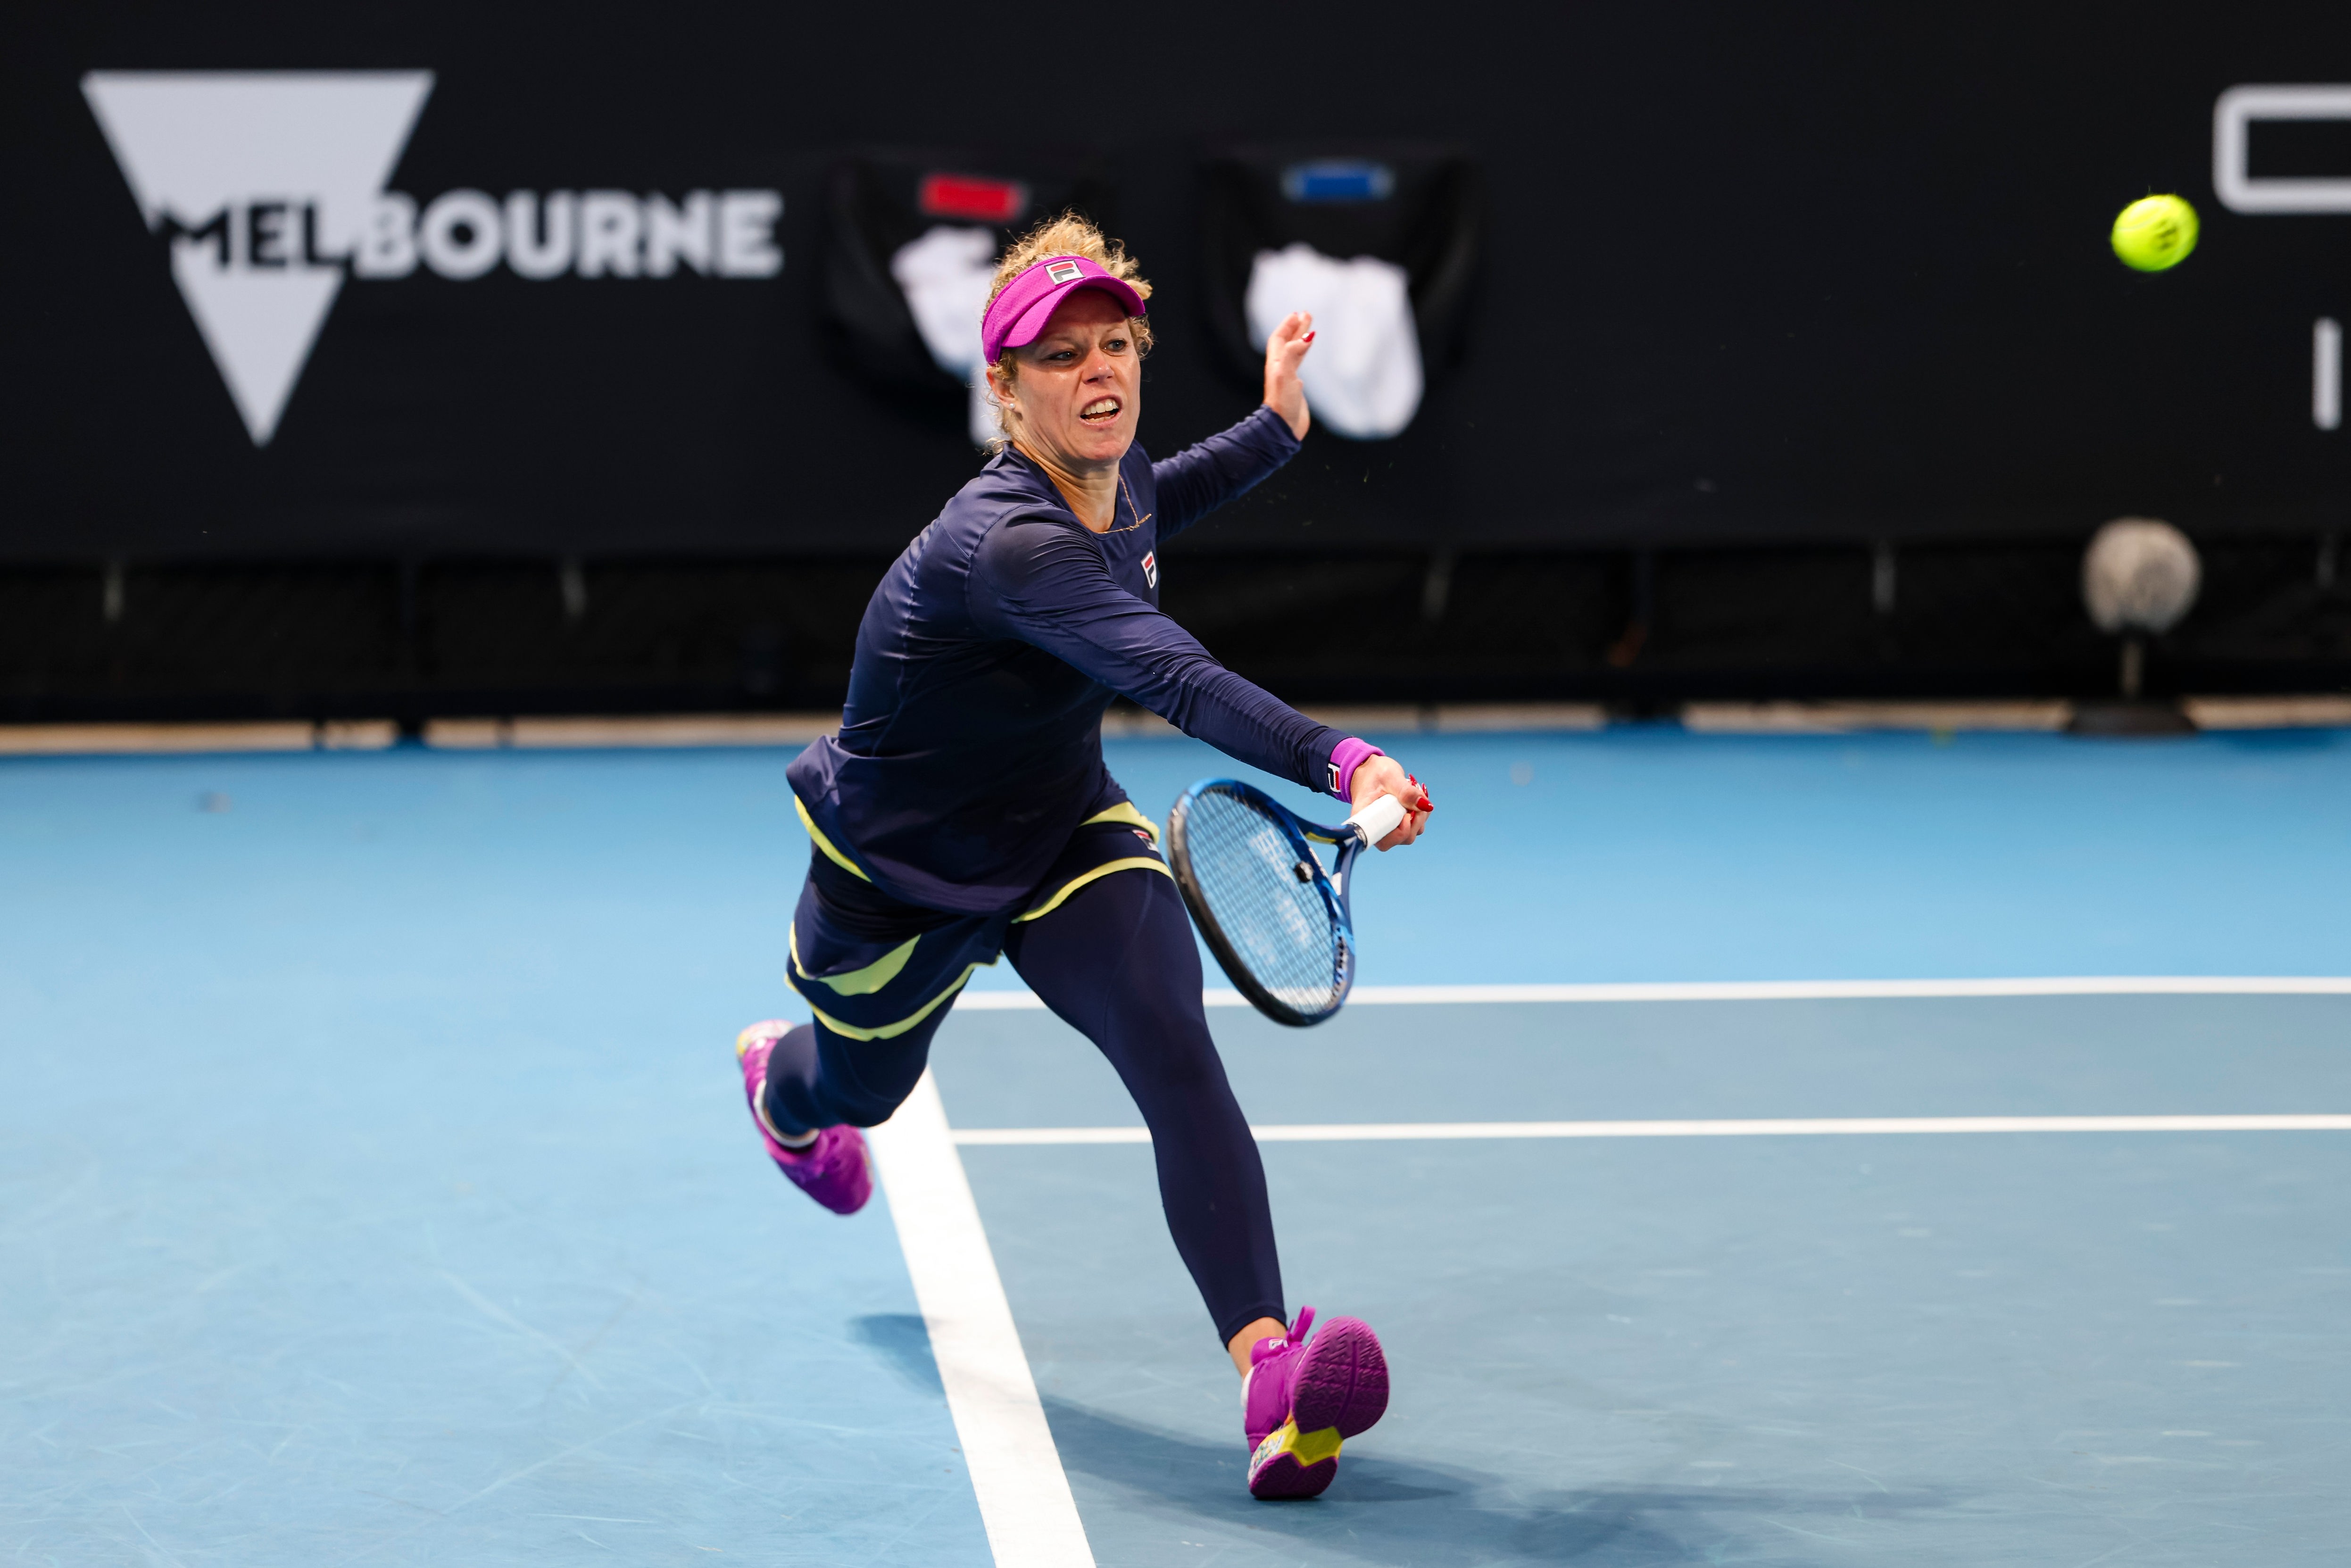 Australian Open - Tennisspielerin Laura Siegemund verpasst Einzug ins Achtelfinale